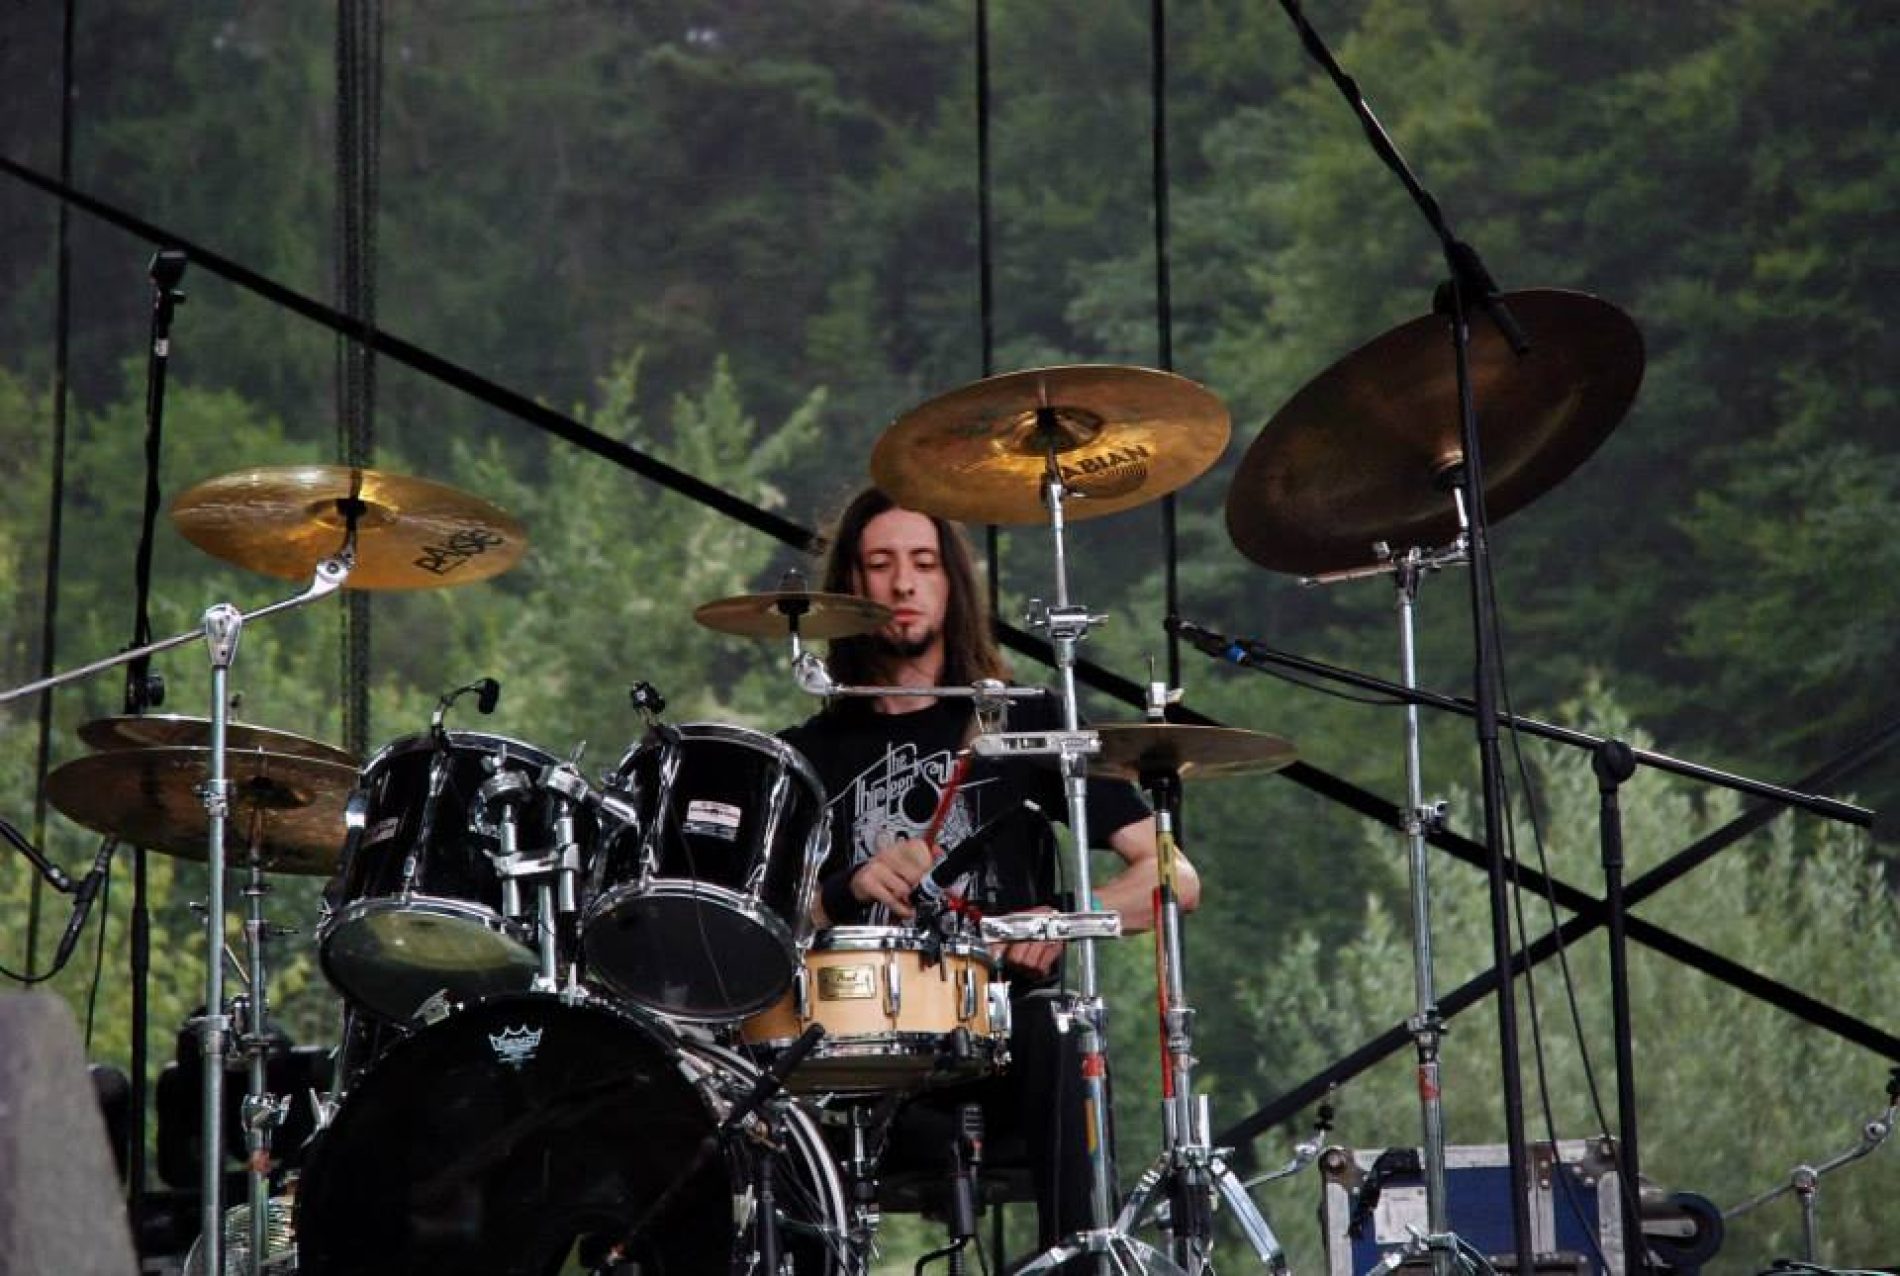 Maximum Rock Festival 2014: Drum Stage